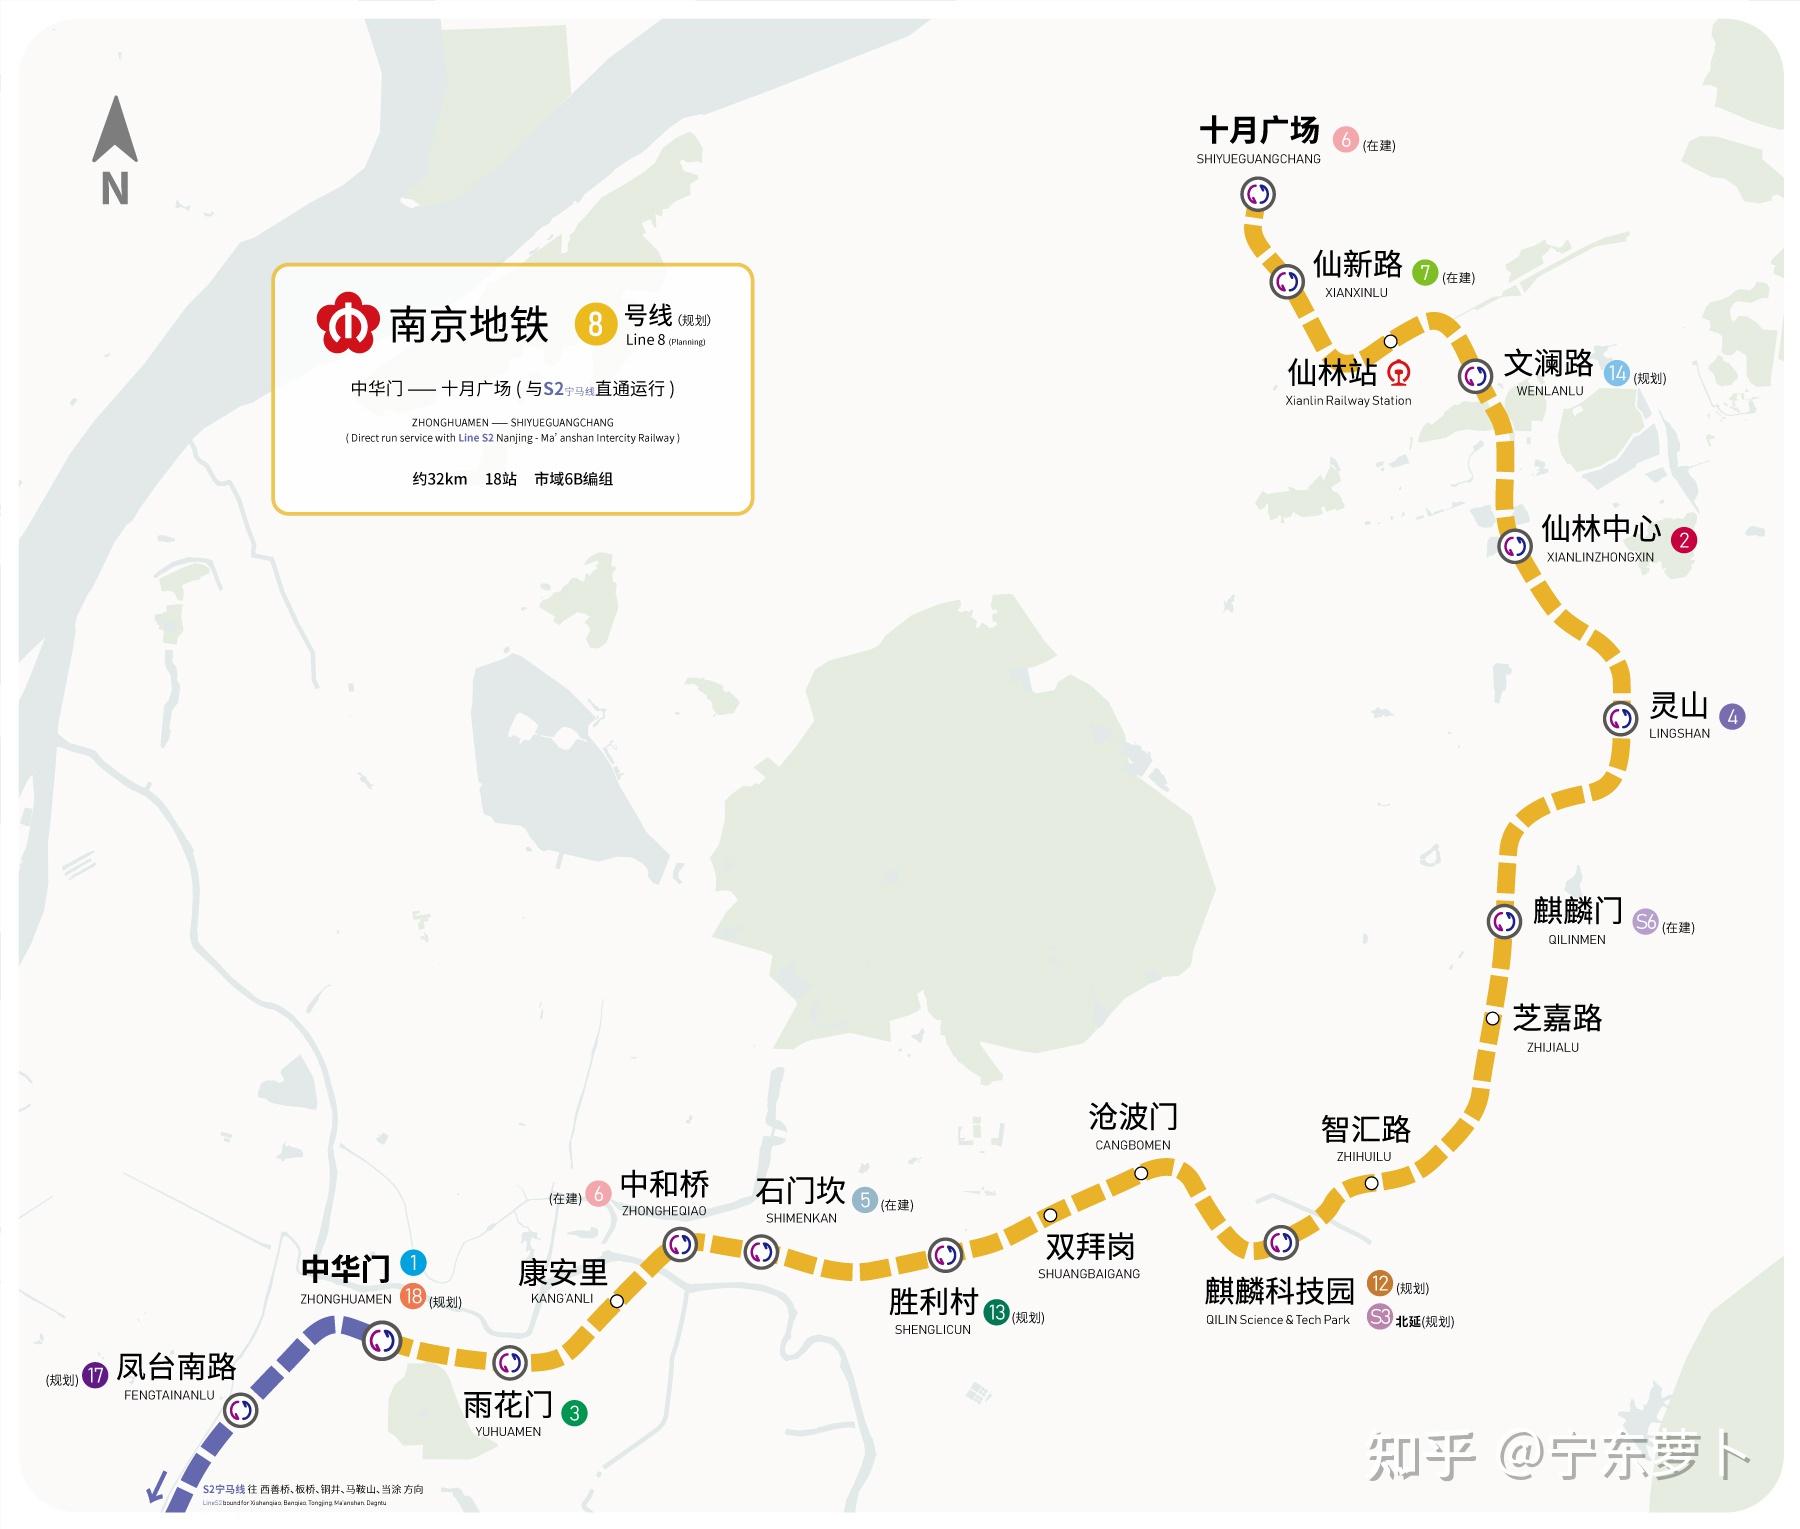 南京地铁远期线网规划图2035及各条线路建设规划情况介绍v17